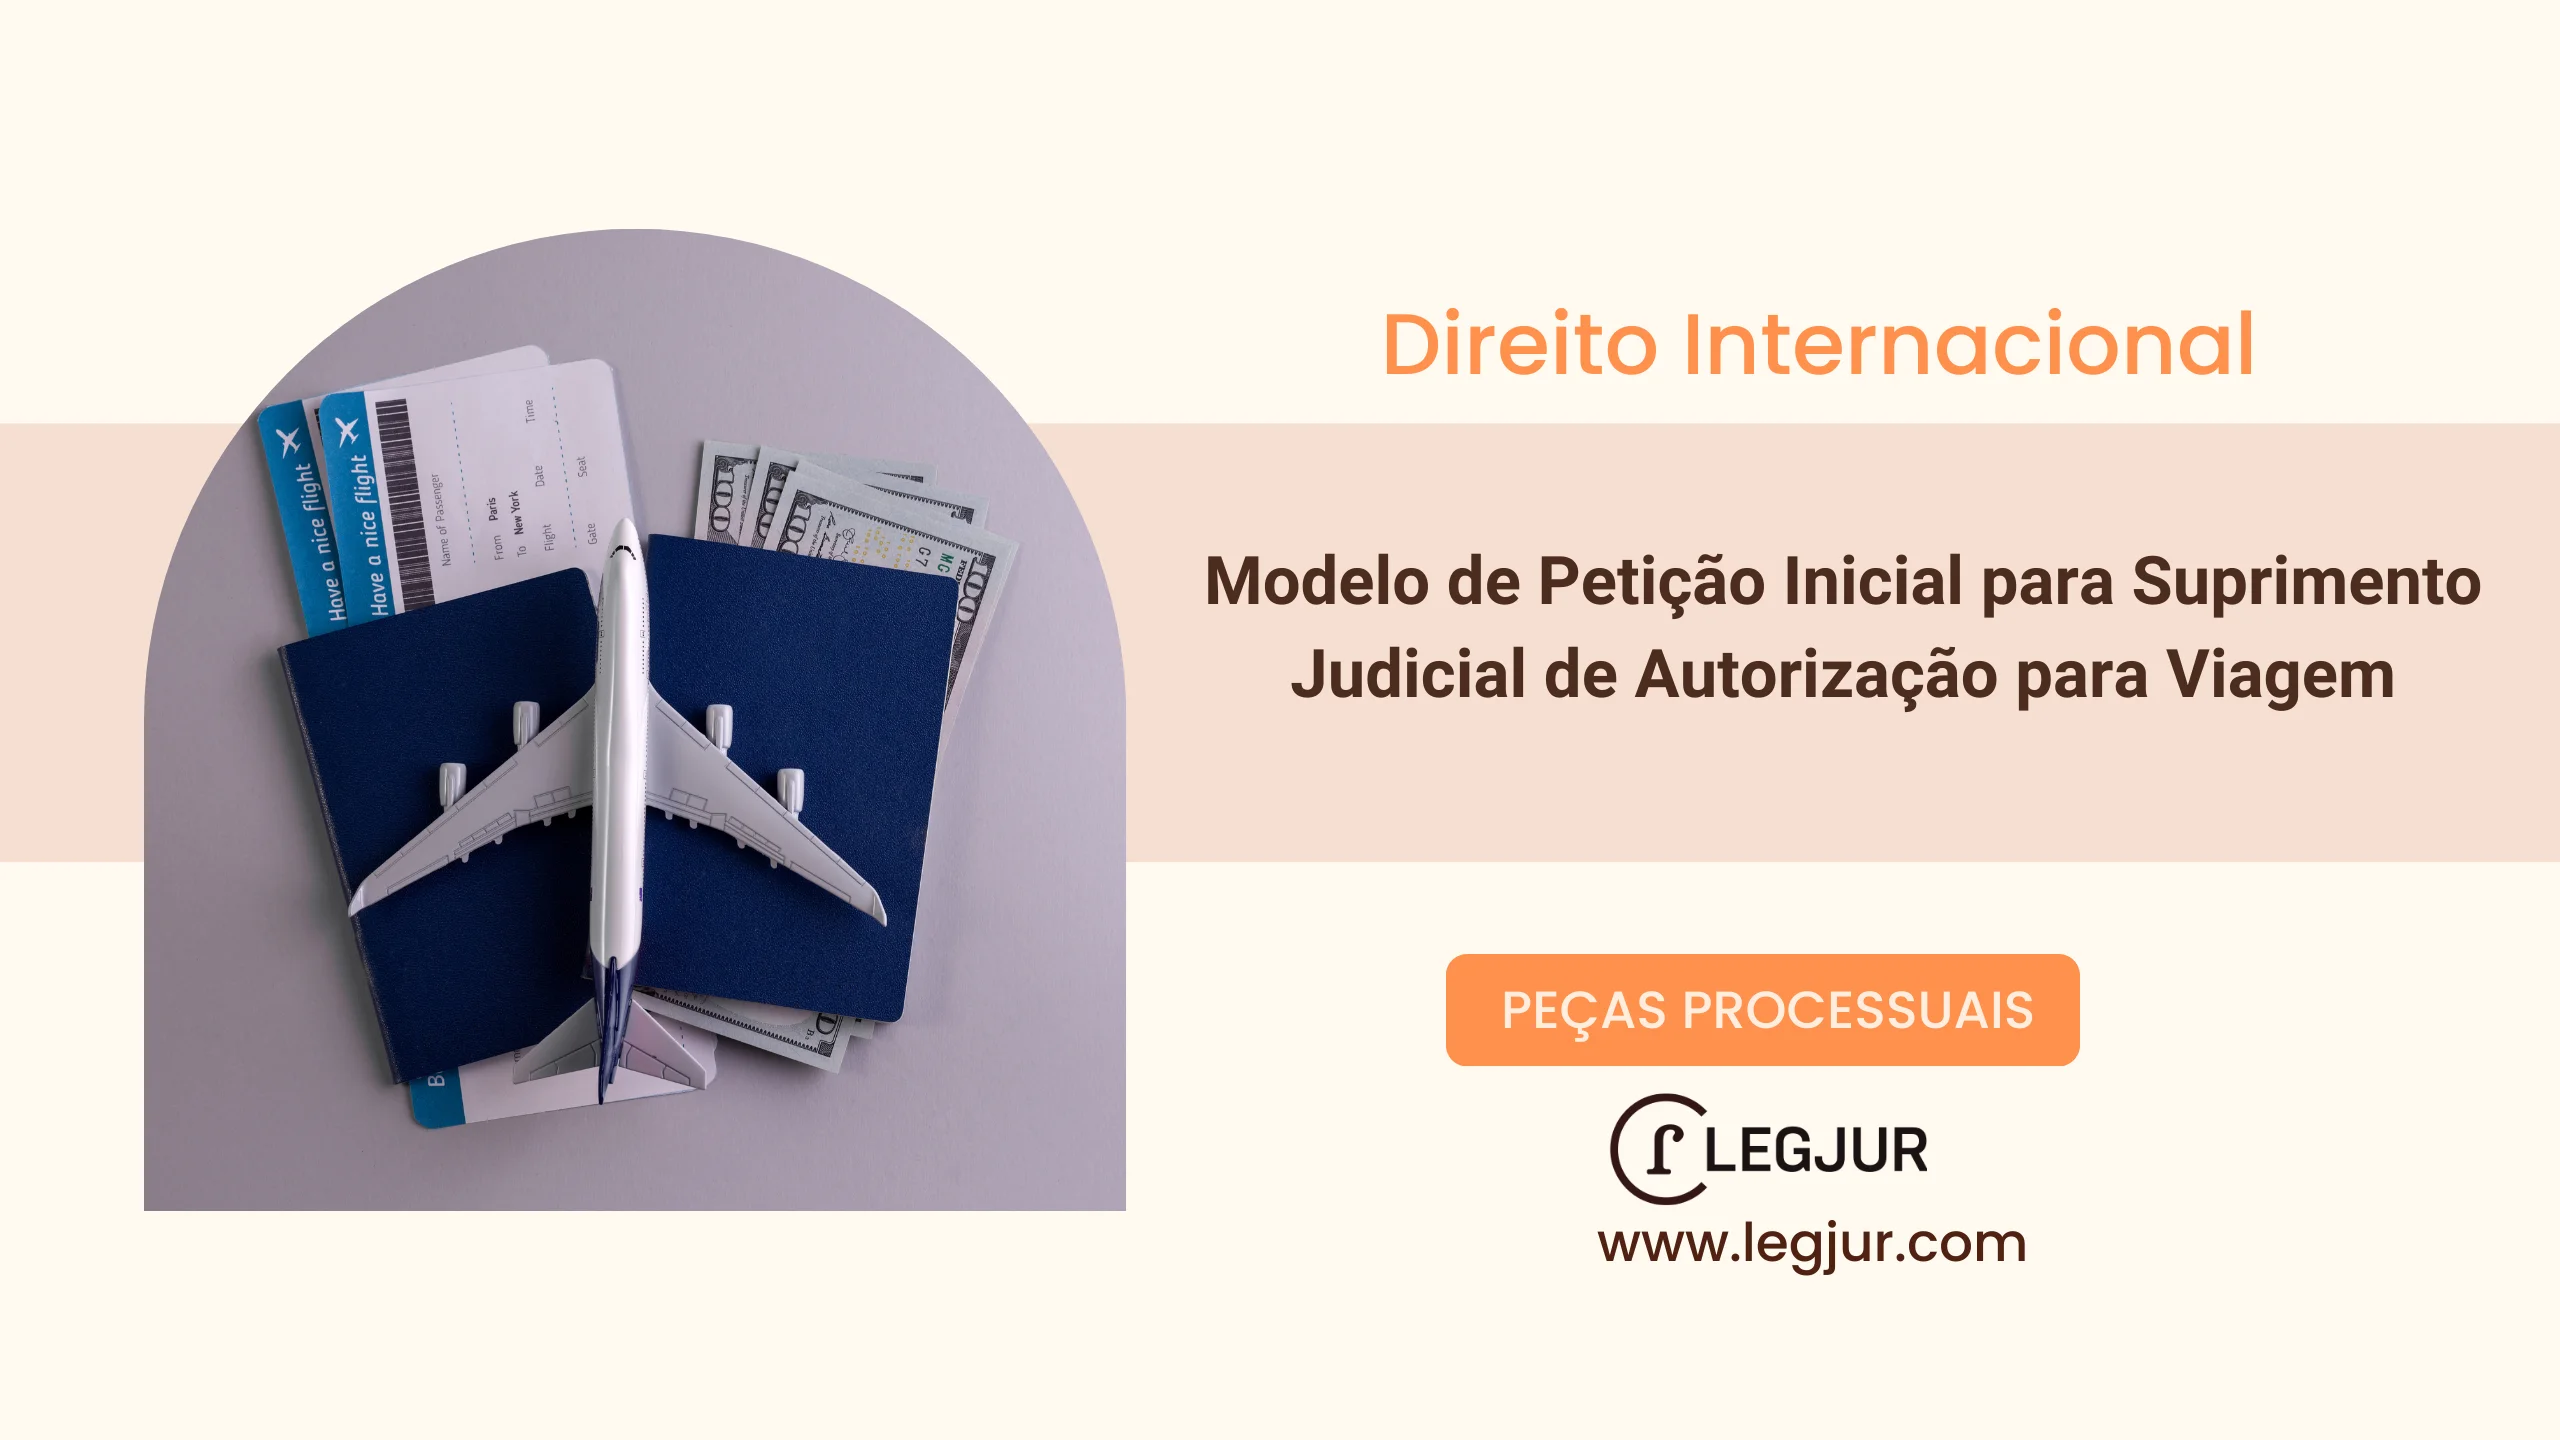 Modelo de Petição Inicial para Suprimento Judicial de Autorização para Viagem